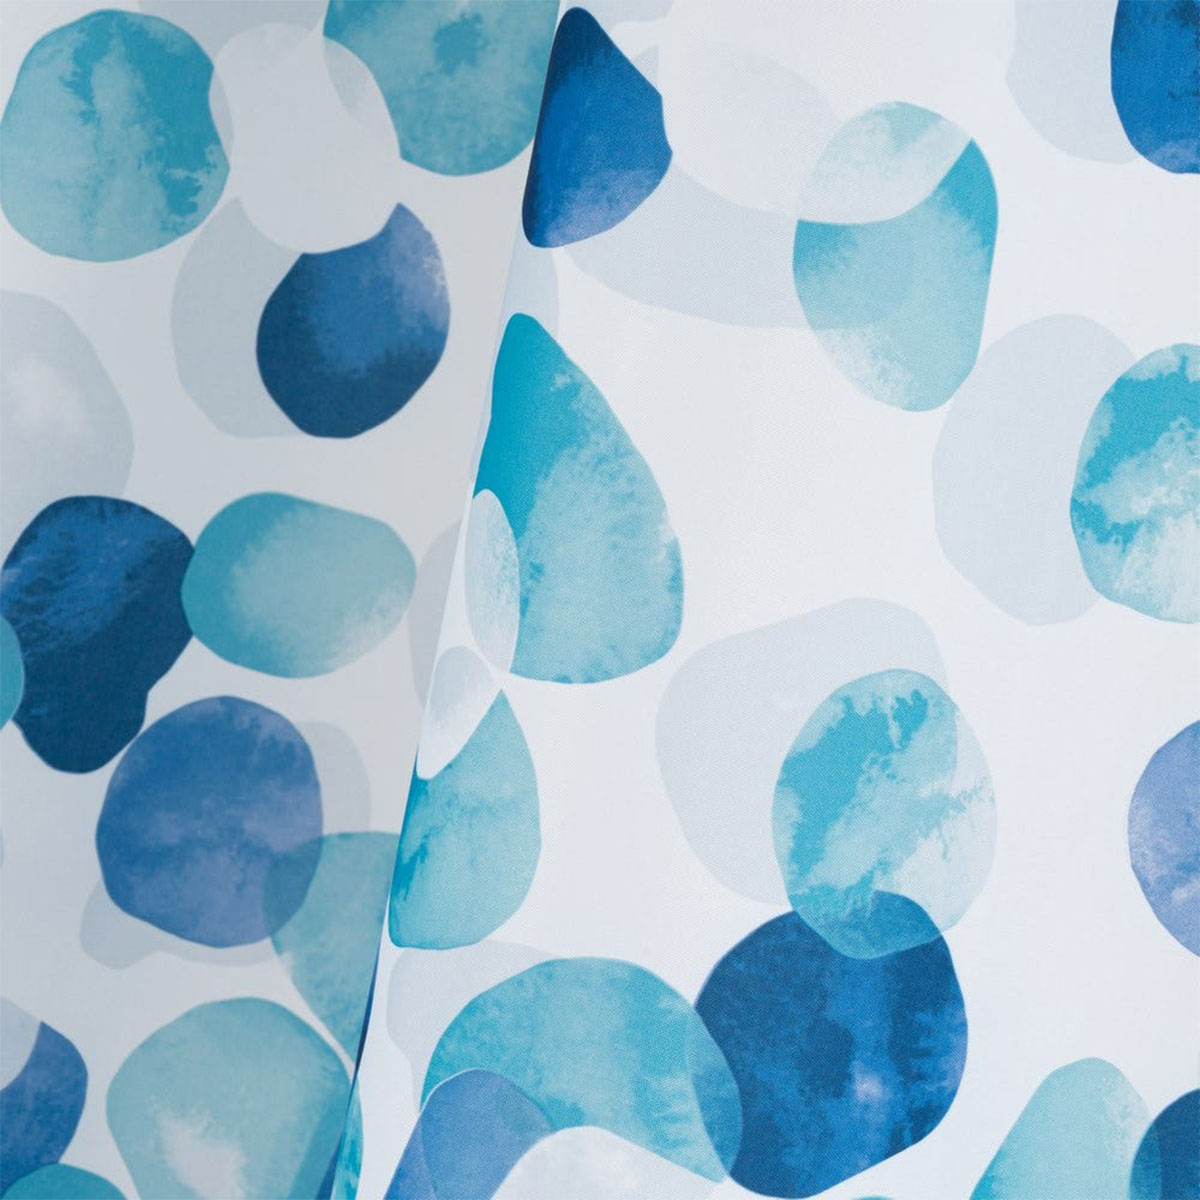 Shower Curtain blue bubbles 180 x 200 cm